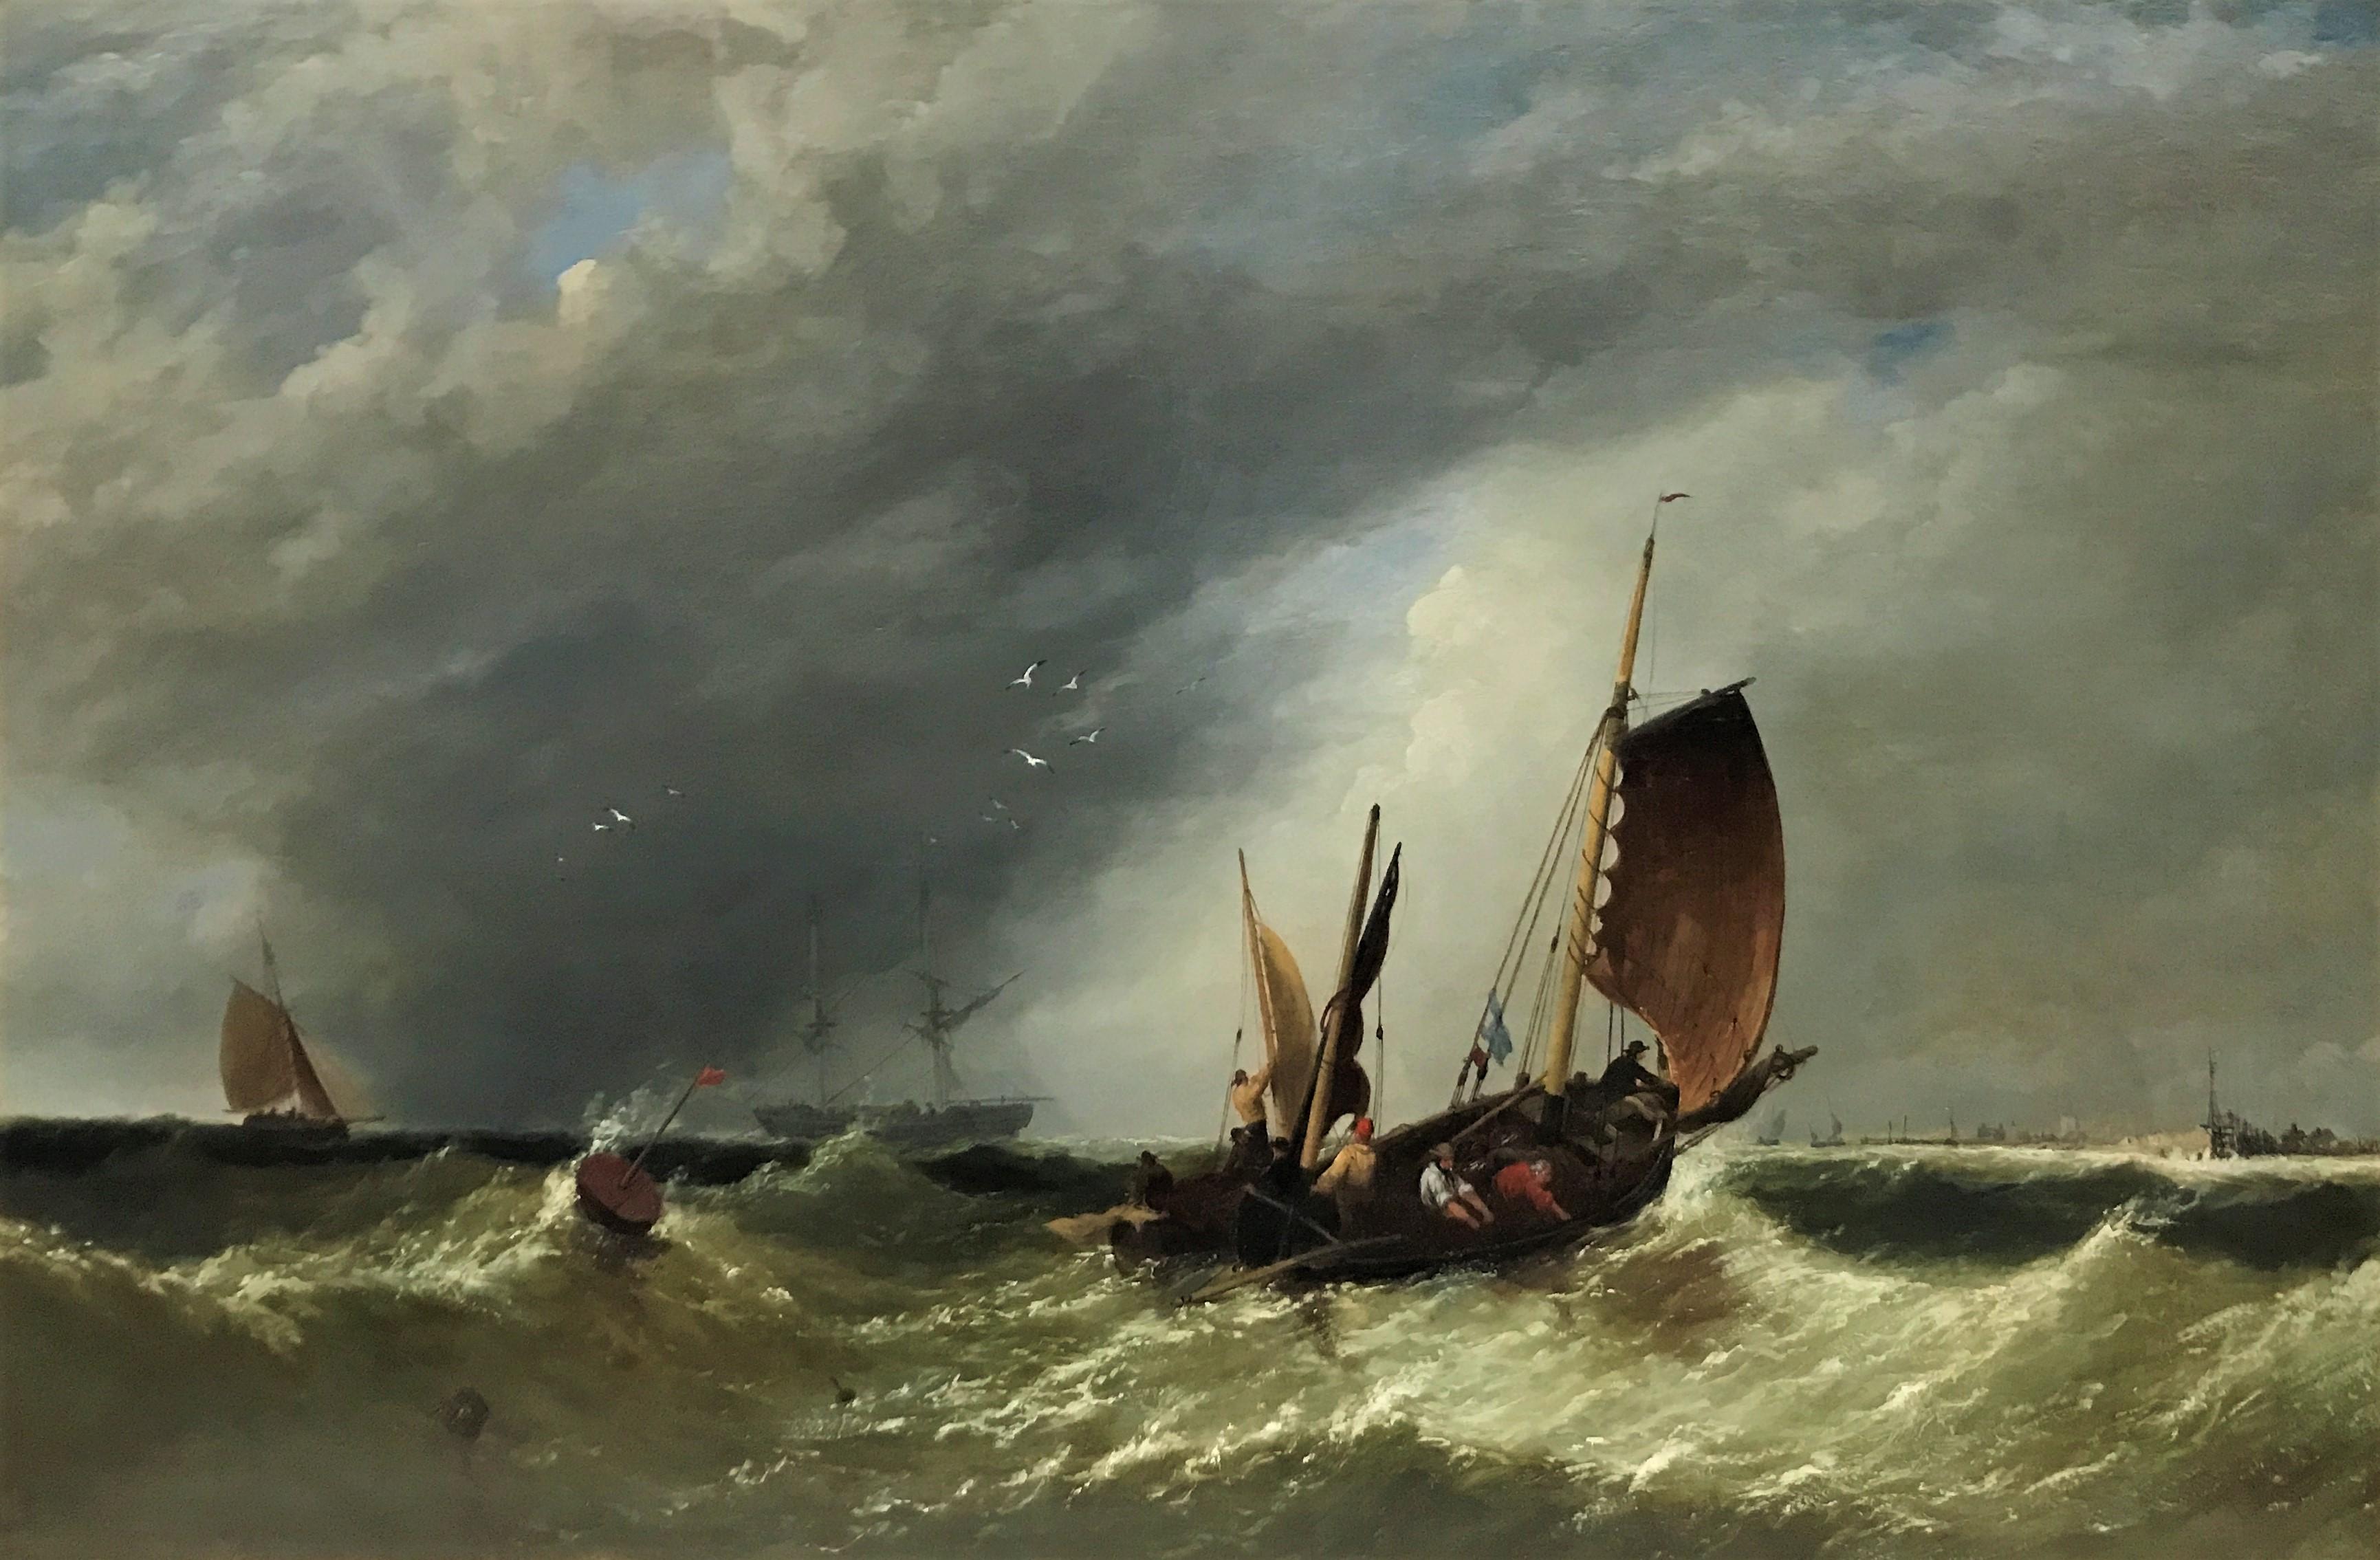 Landscape Painting James Meadows Sr. - « Tormy Seas, paysage marin de petits voiliers jetés sur les vagues », huile sur toile